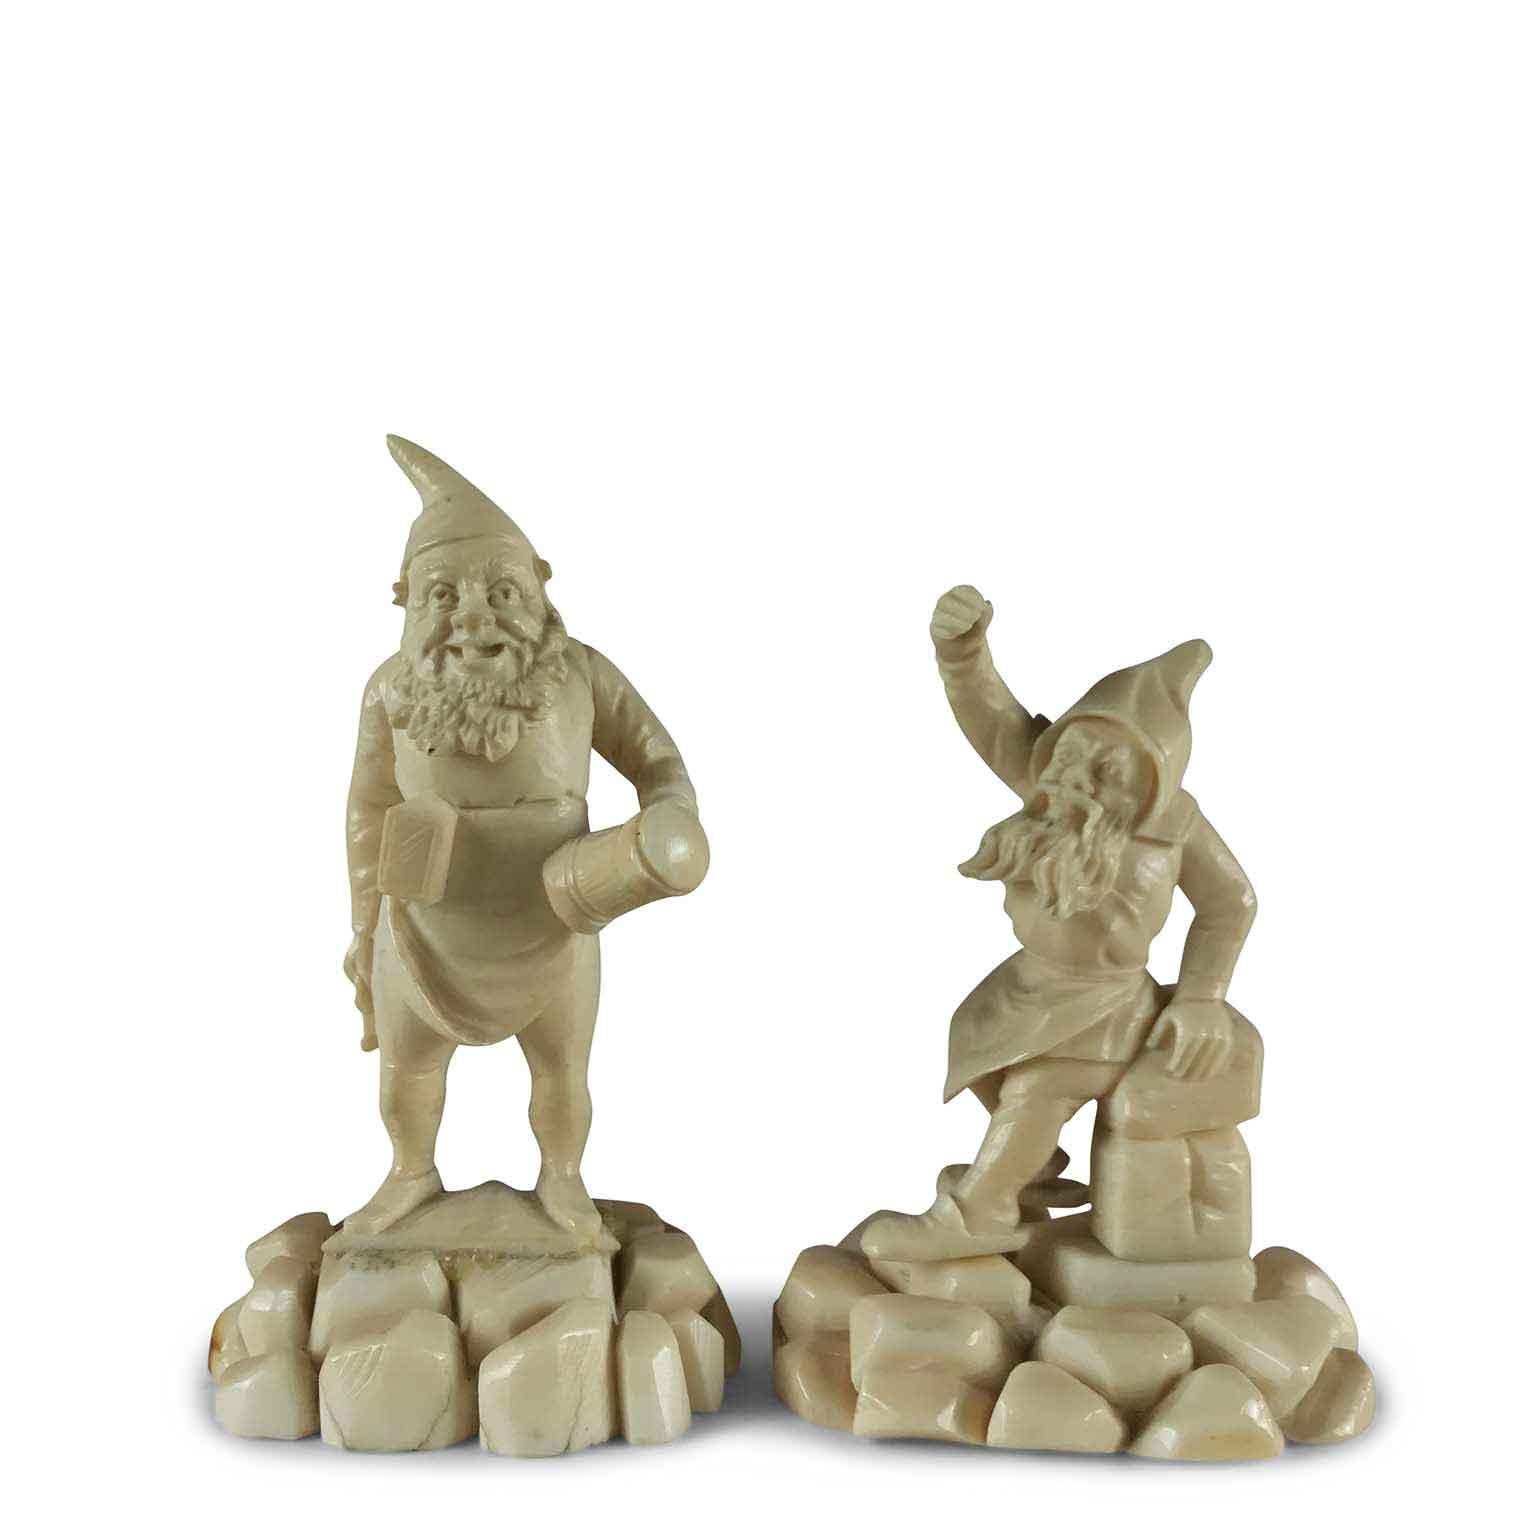 Hübsches Paar fröhlicher Wichtelfiguren aus geschnitztem Knochen deutscher Herkunft aus der zweiten Hälfte des 19. Jahrhunderts.
Auf einem geschnitzten Steinsockel aus Knochen hält ein stehender, lächelnder Gnom einen Becher mit Deckel in der einen